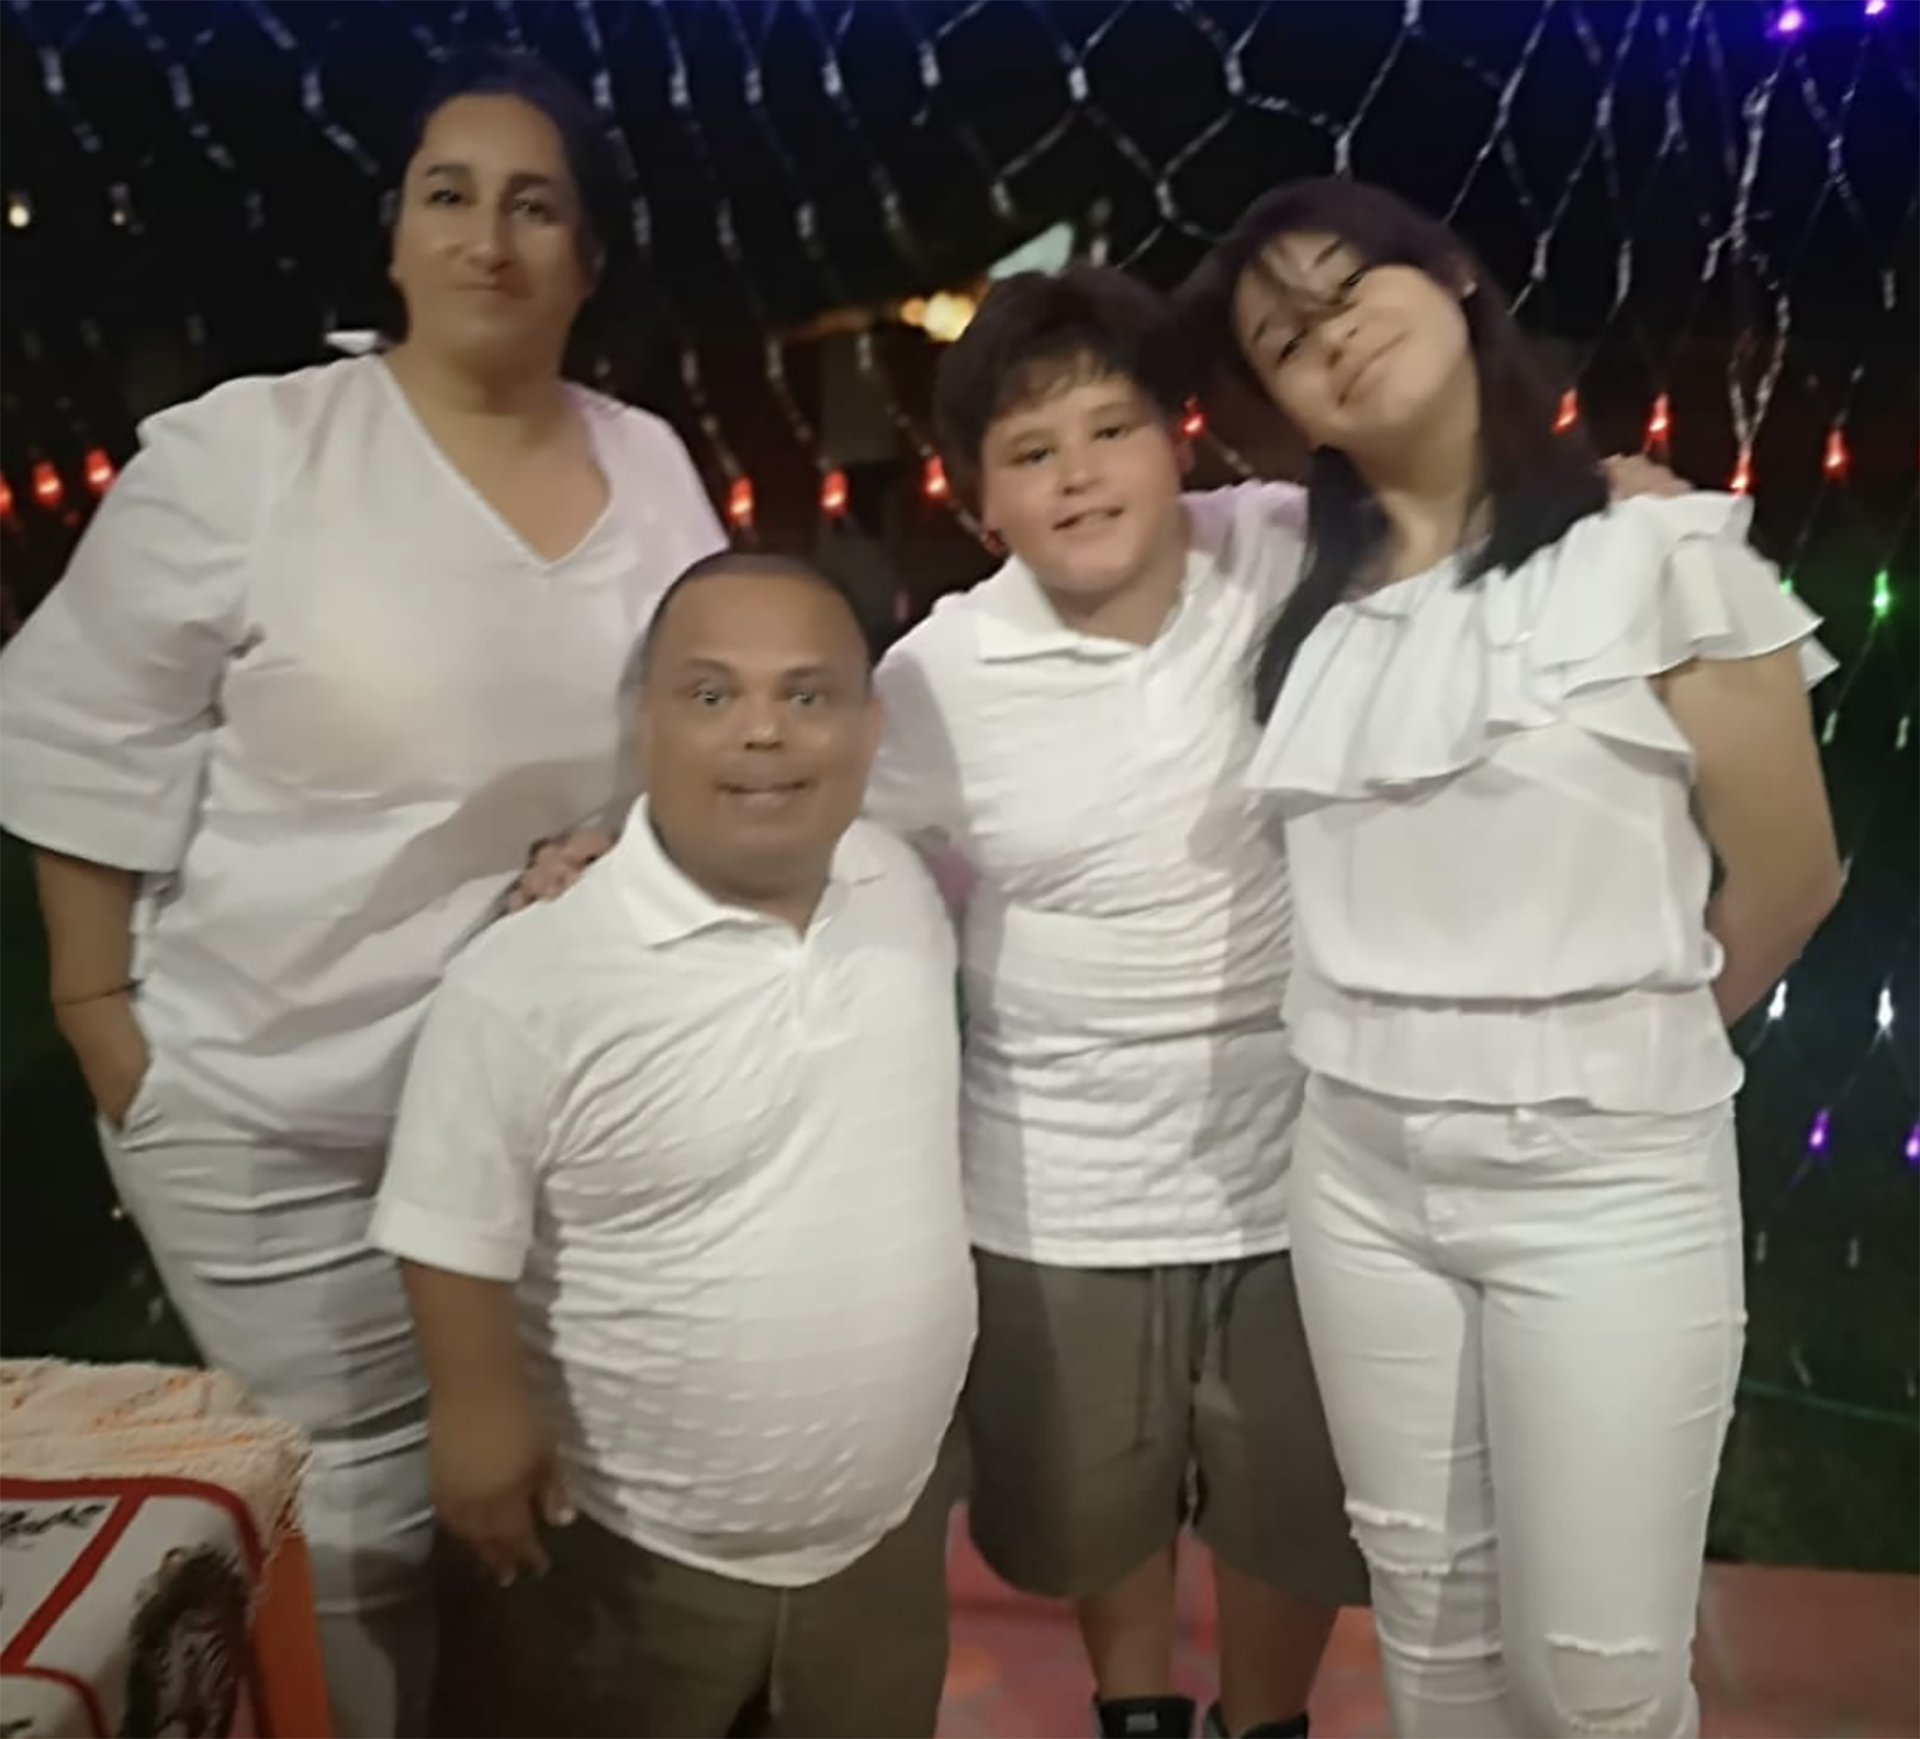 El paraguayo Julio César "Mortero Bala" es humorista además de jugar al fútbol. Aquí con su familia en Asunción